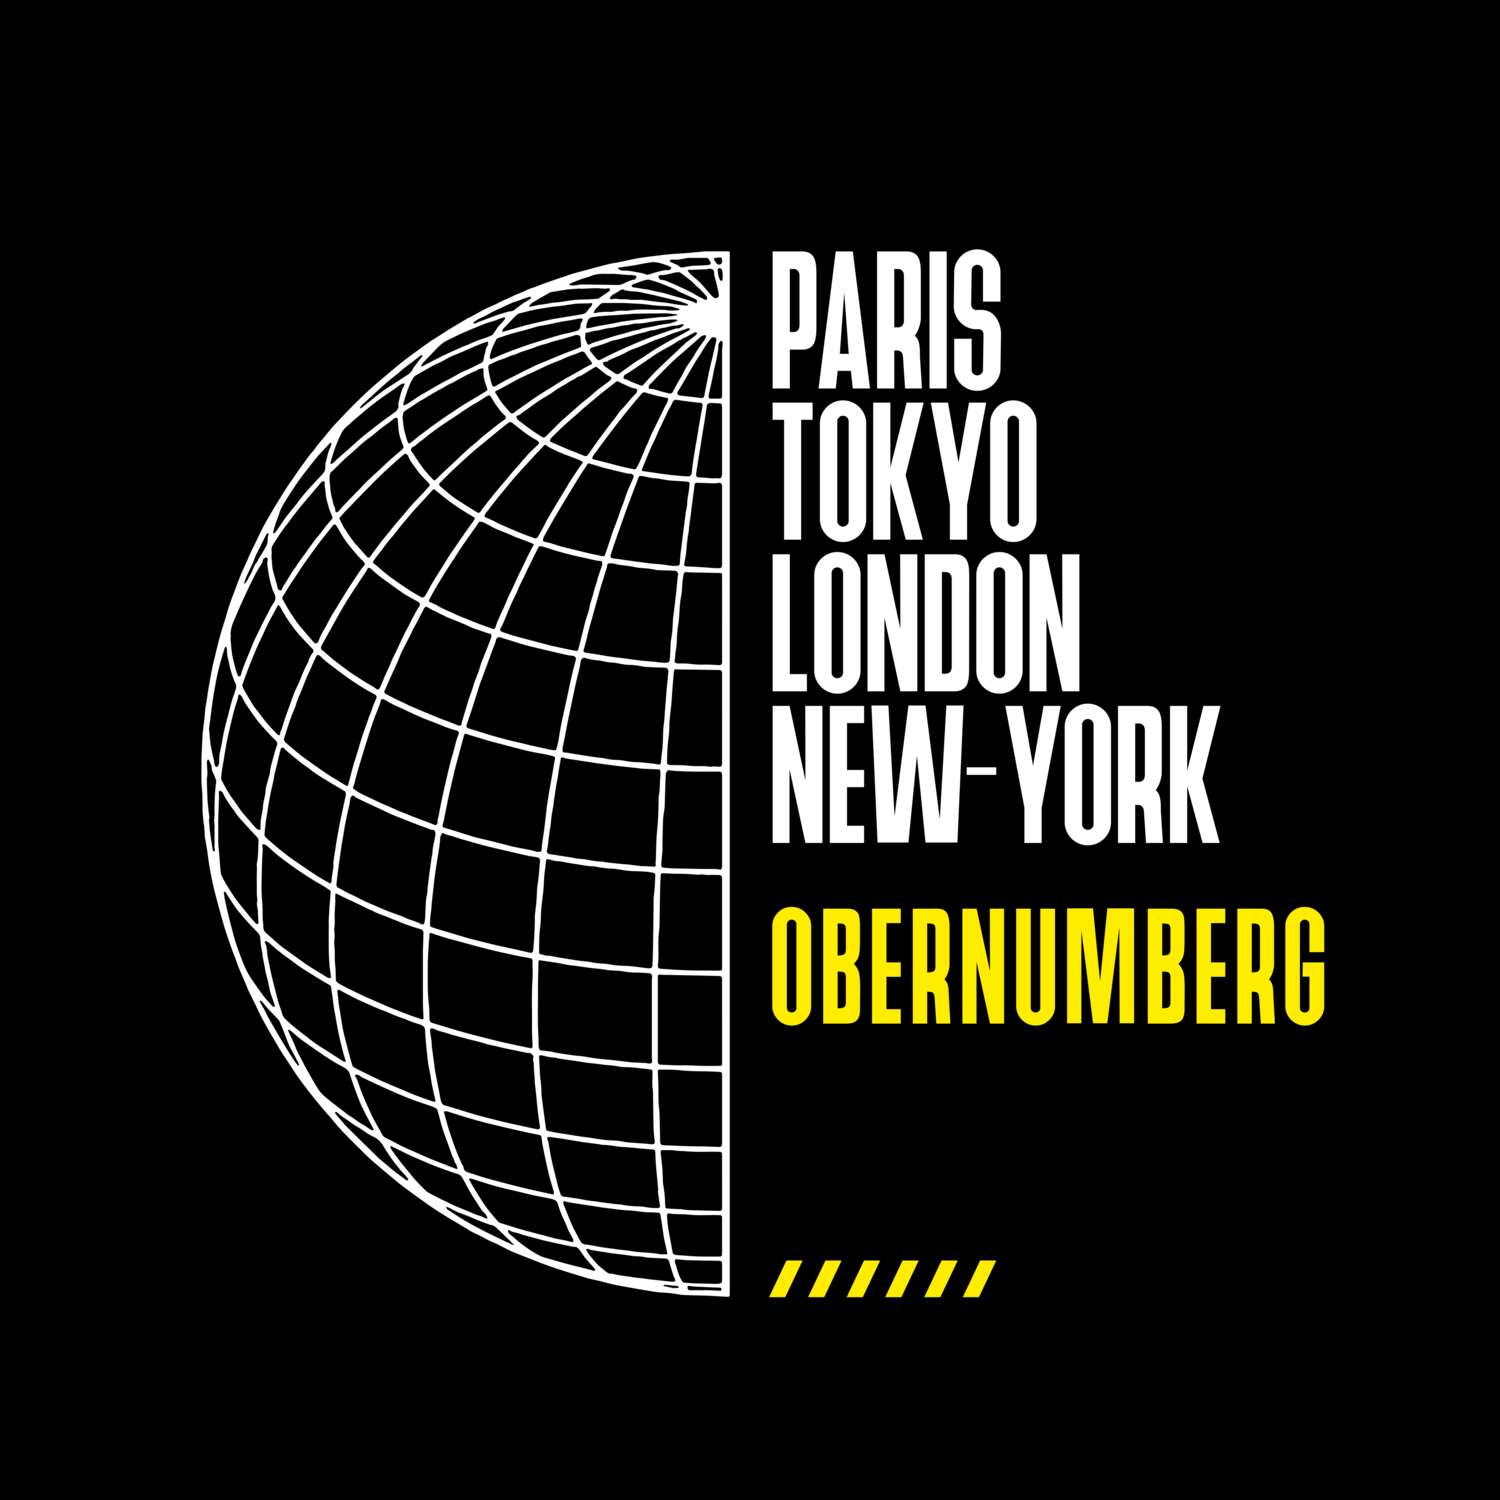 Obernumberg T-Shirt »Paris Tokyo London«